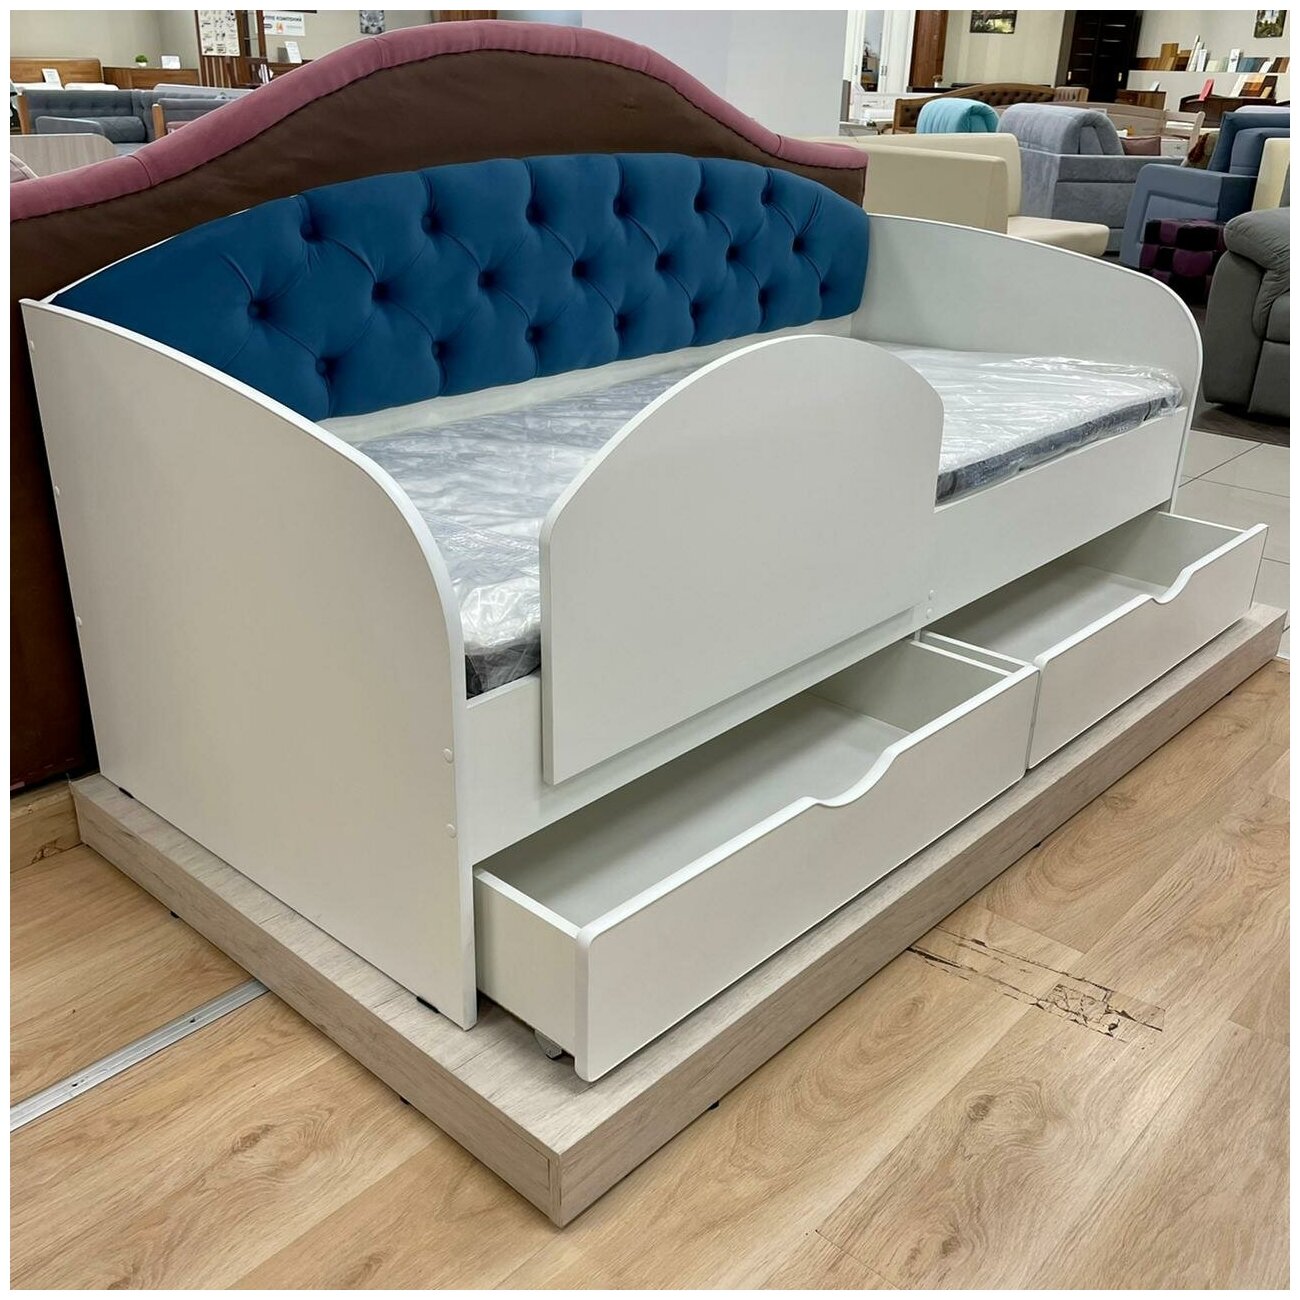 Matrix кровать с мягкой спинкой Sofa 9, цвет синий, 190x80 см